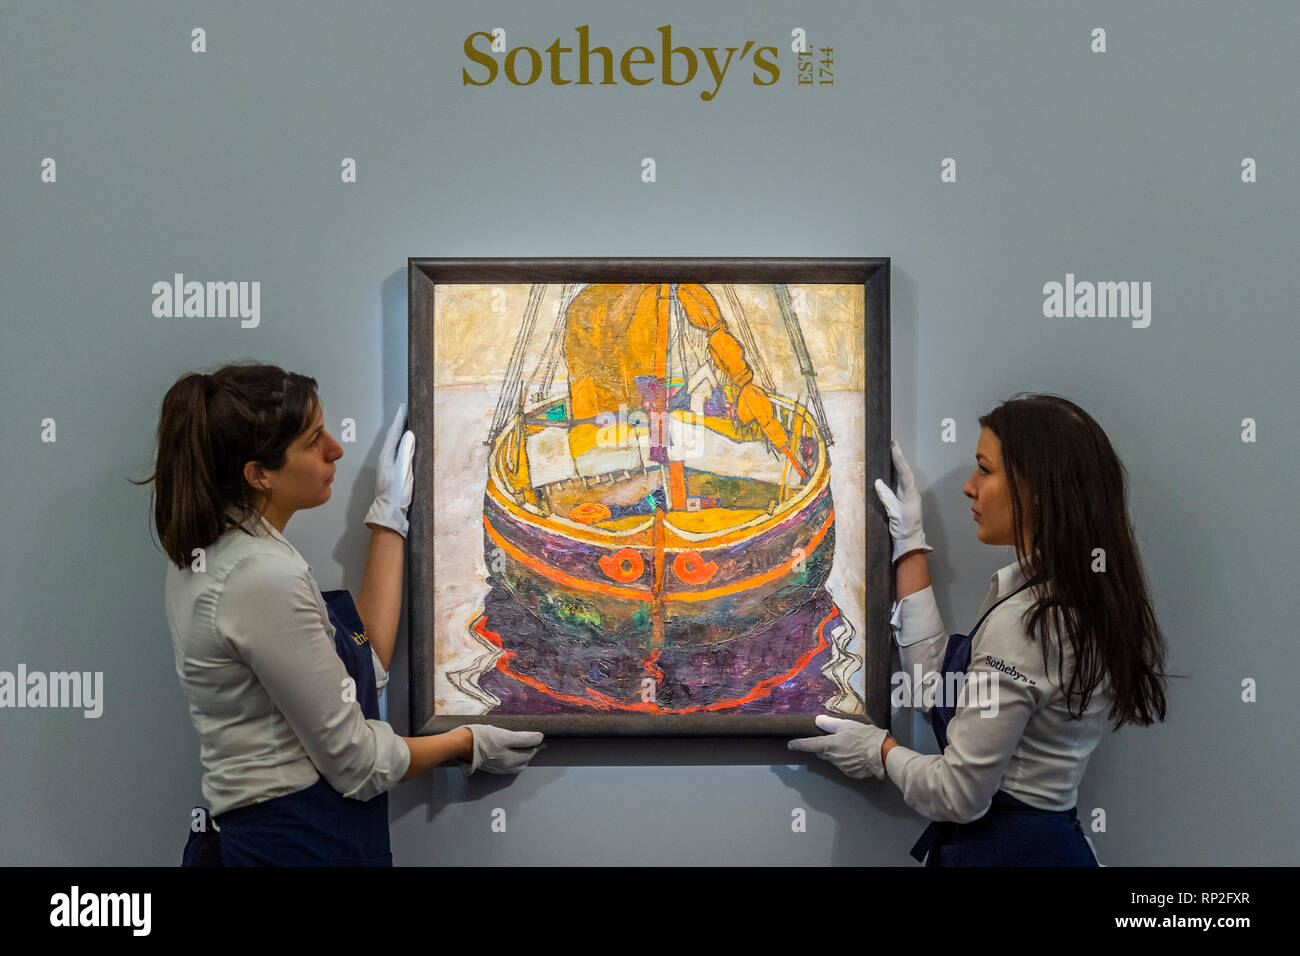 Londres, Reino Unido. 20 Feb, 2019. Triestiner Fischerboot 1912, de Egon Schiele, est £6-8m - una vista previa aahead del impresionista, moderno y surrealista de ventas de Arte en Sotheby's New Bond Street, Londres. Crédito: Guy Bell/Alamy Live News Foto de stock